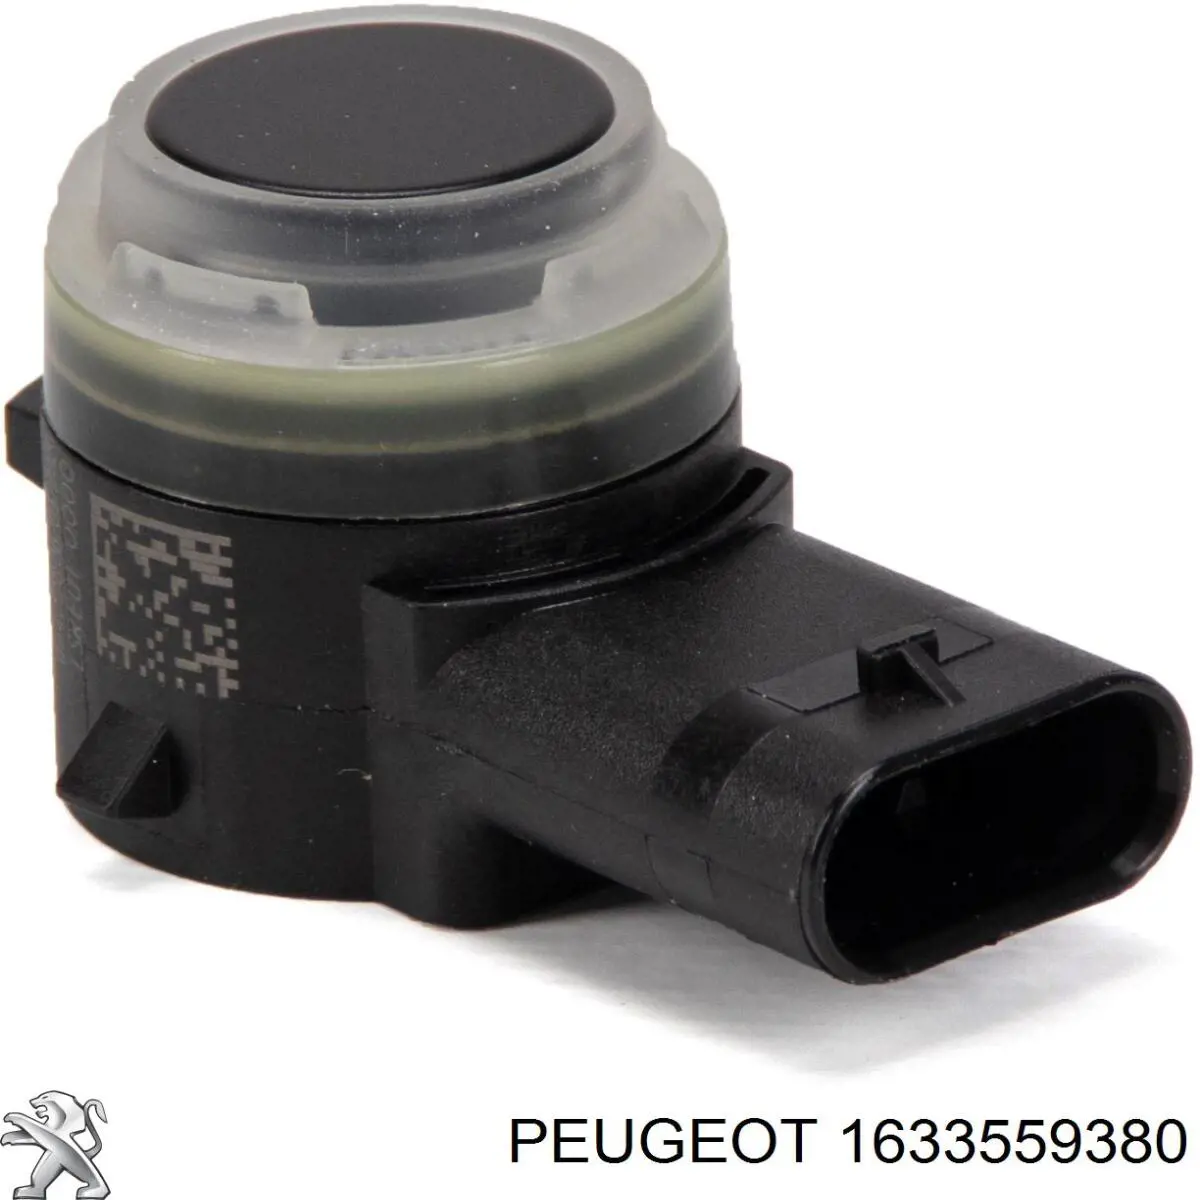 1633559380 Peugeot/Citroen датчик сигнализации парковки (парктроник передний/задний центральный)